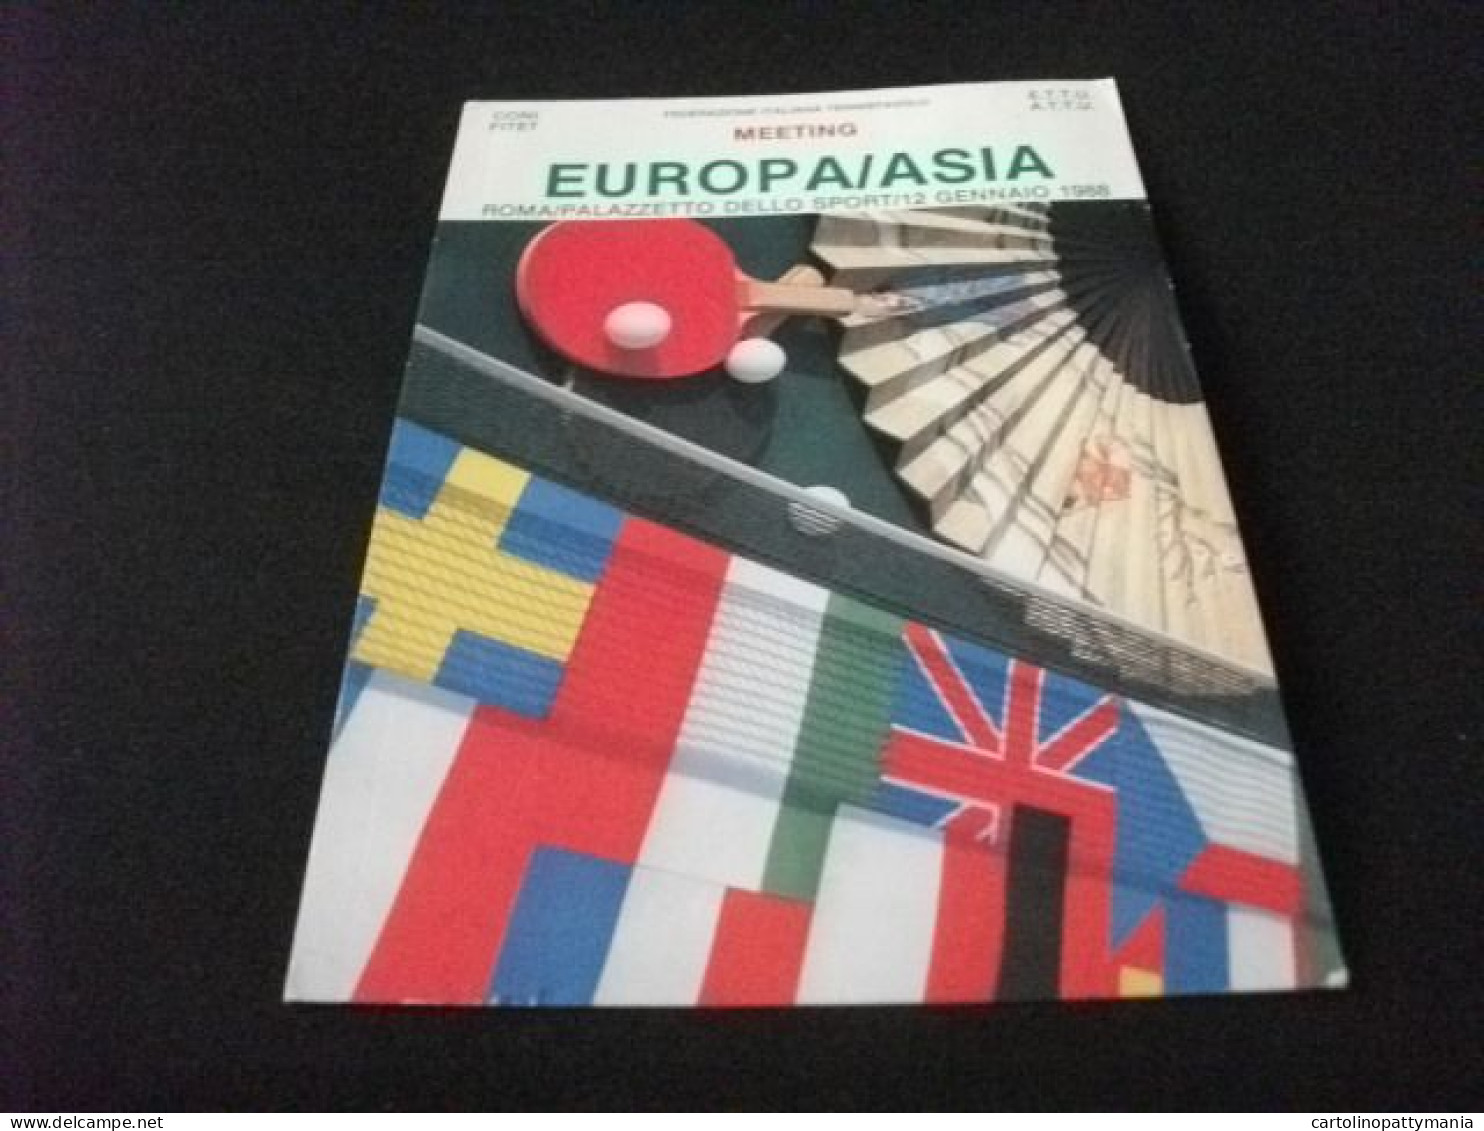 EUROPA/ASIA MEETING ROMA PALAZZETTO DELLO SPORT 1988 TENNIS DA TAVOLO FEDERAZIONE ITALIANA TENNISTAVOLO - Tischtennis